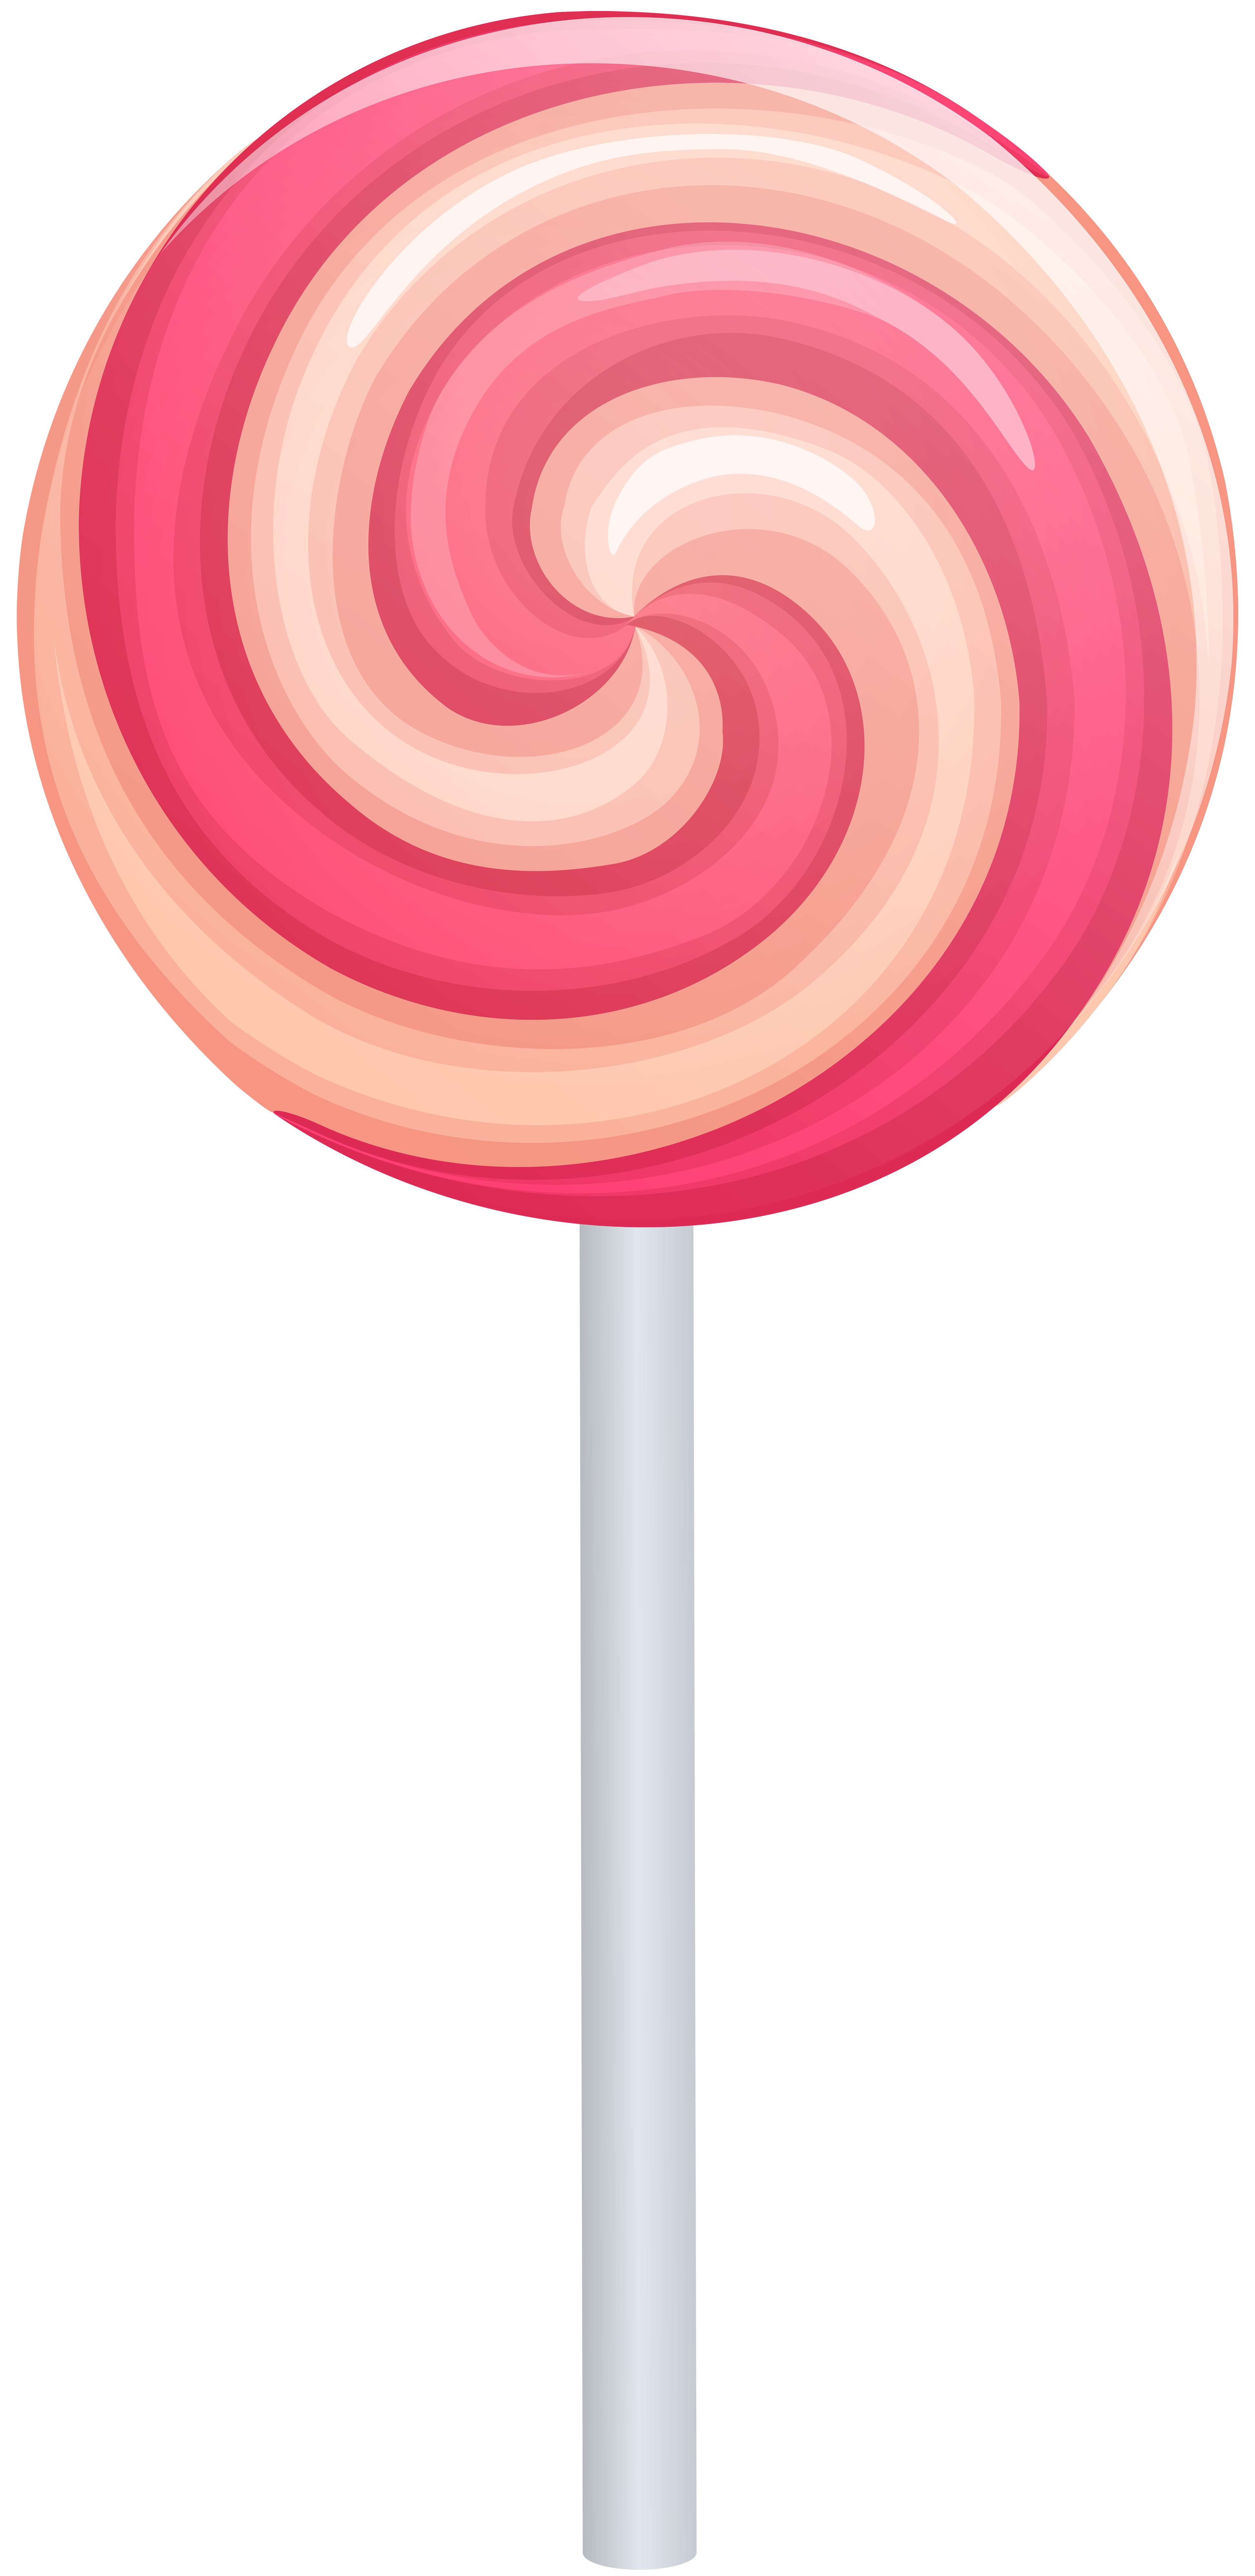 Swirl Lollipops Drawing The Image Kid Has It!